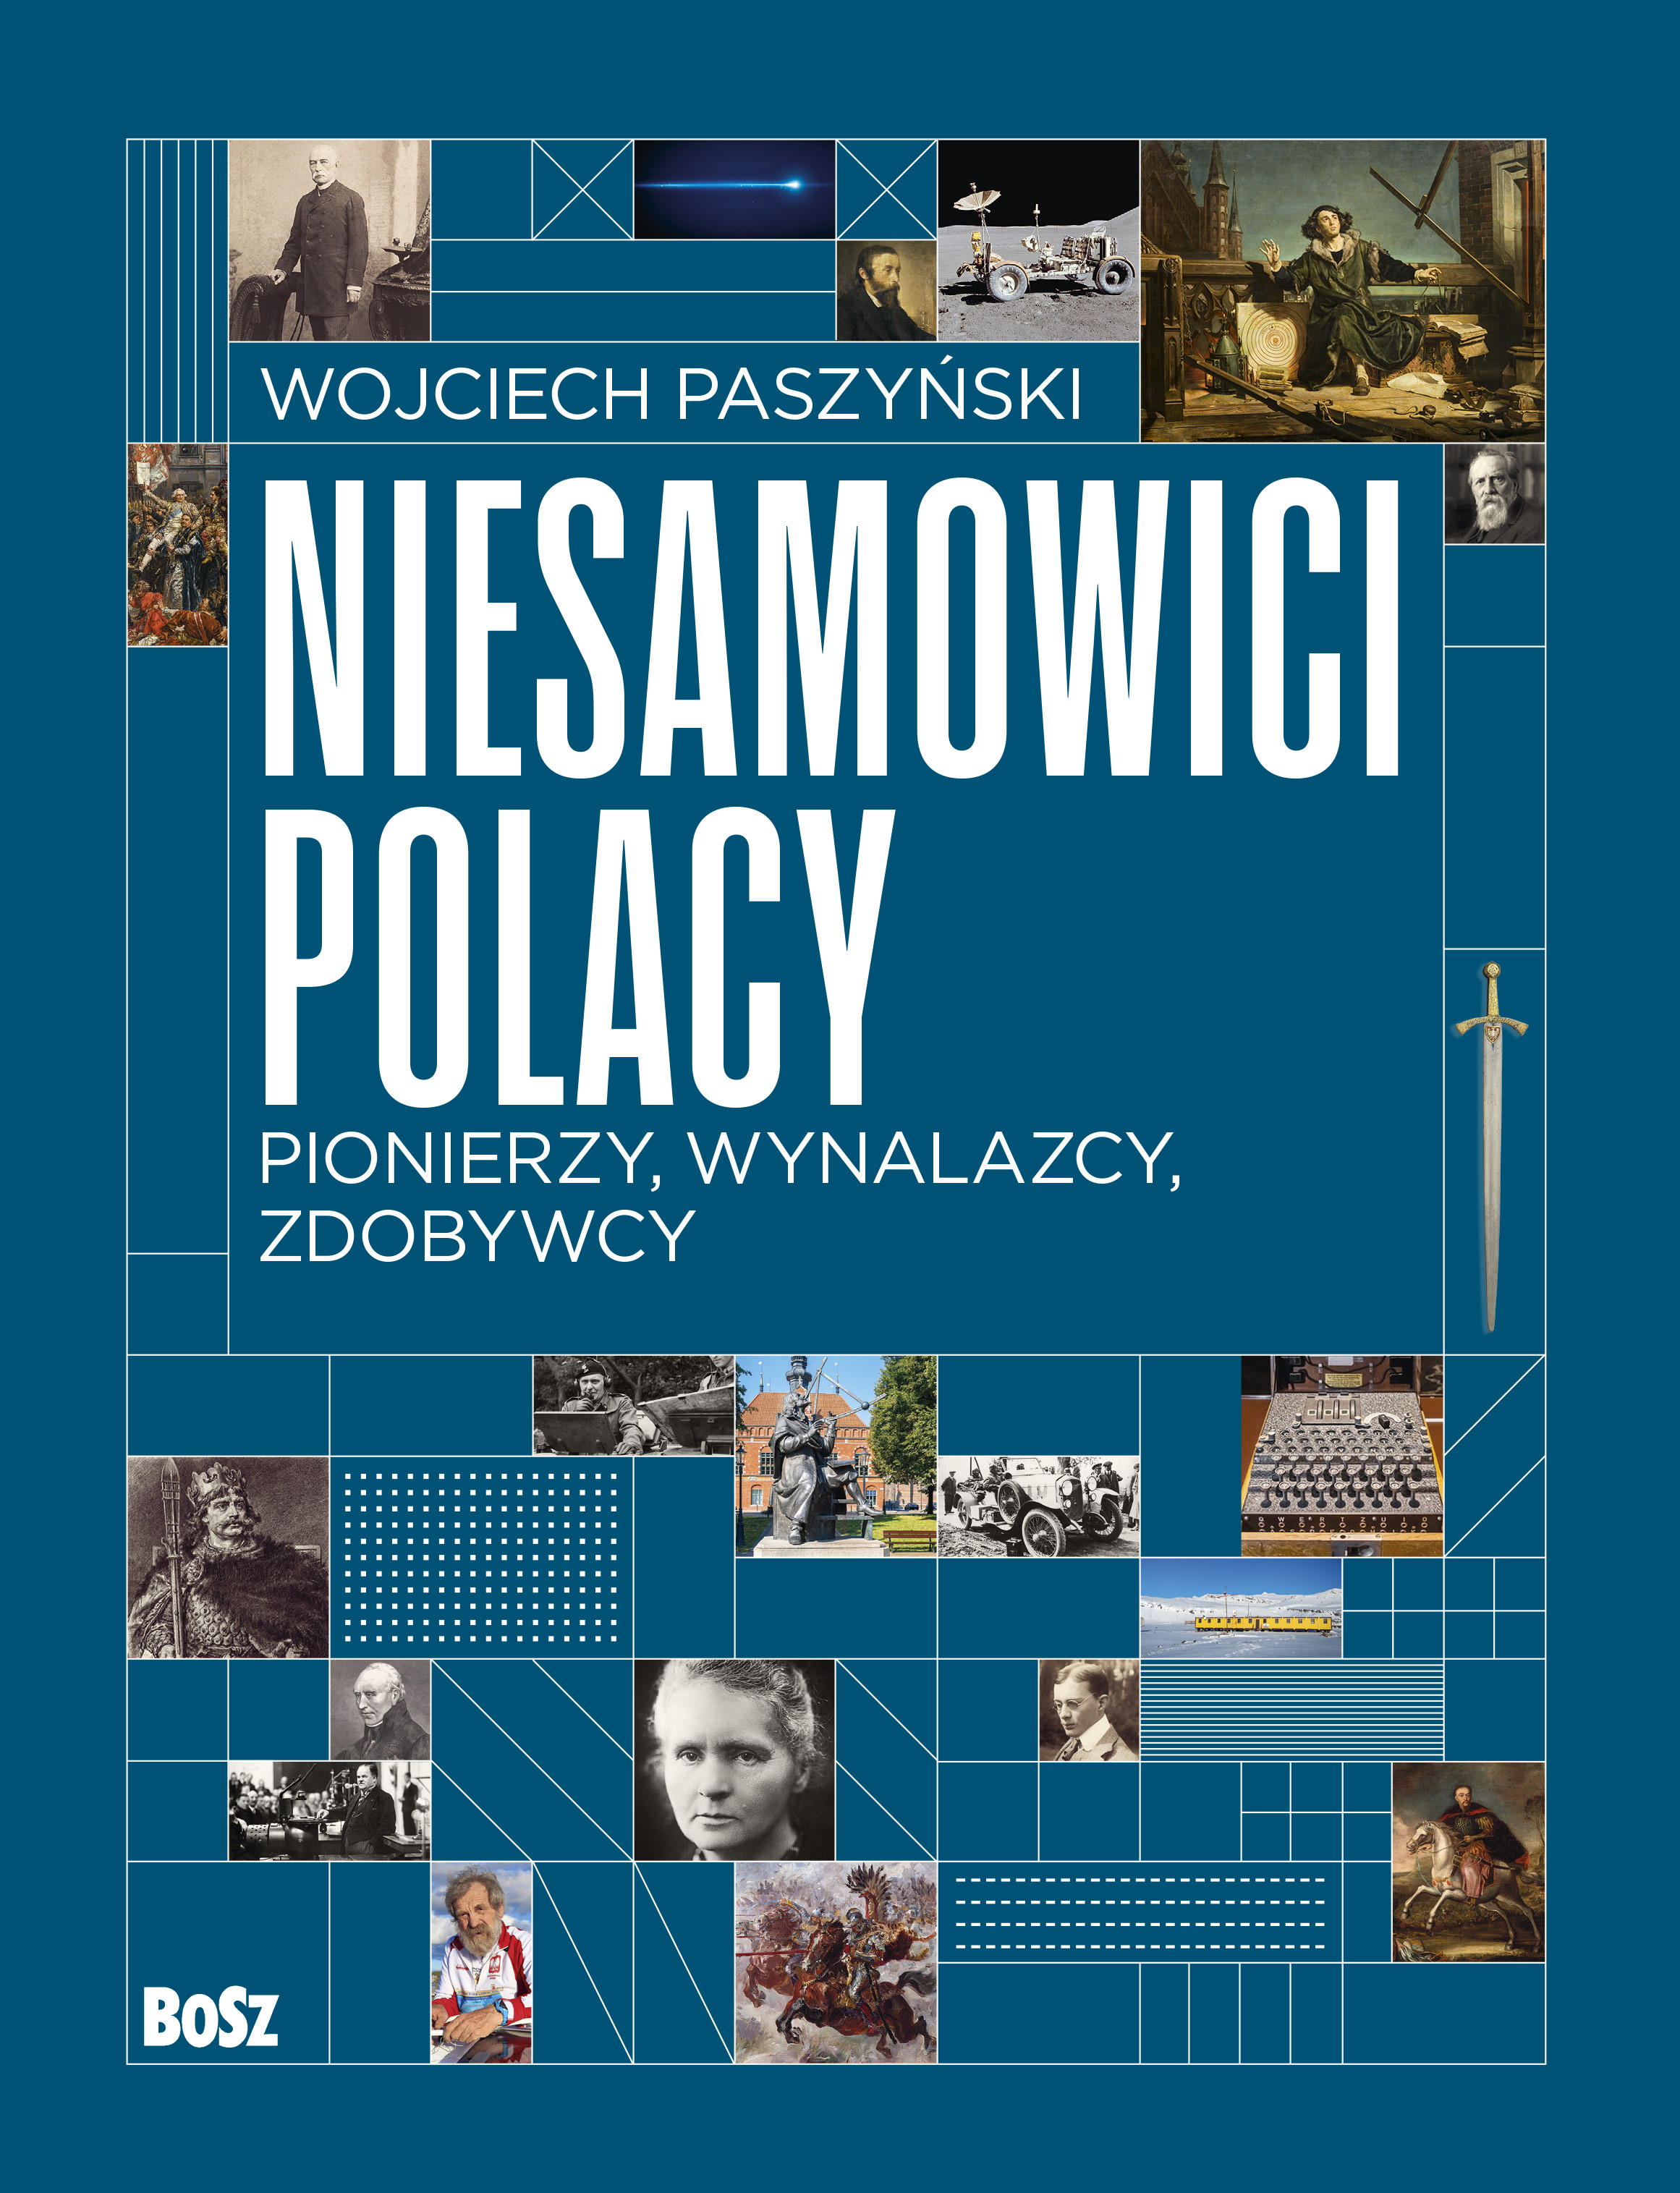 Nowy tytuł wydawnictwa BoSz: "Niesamowici Polacy. Pionierzy, wynalazcy, zdobywcy”